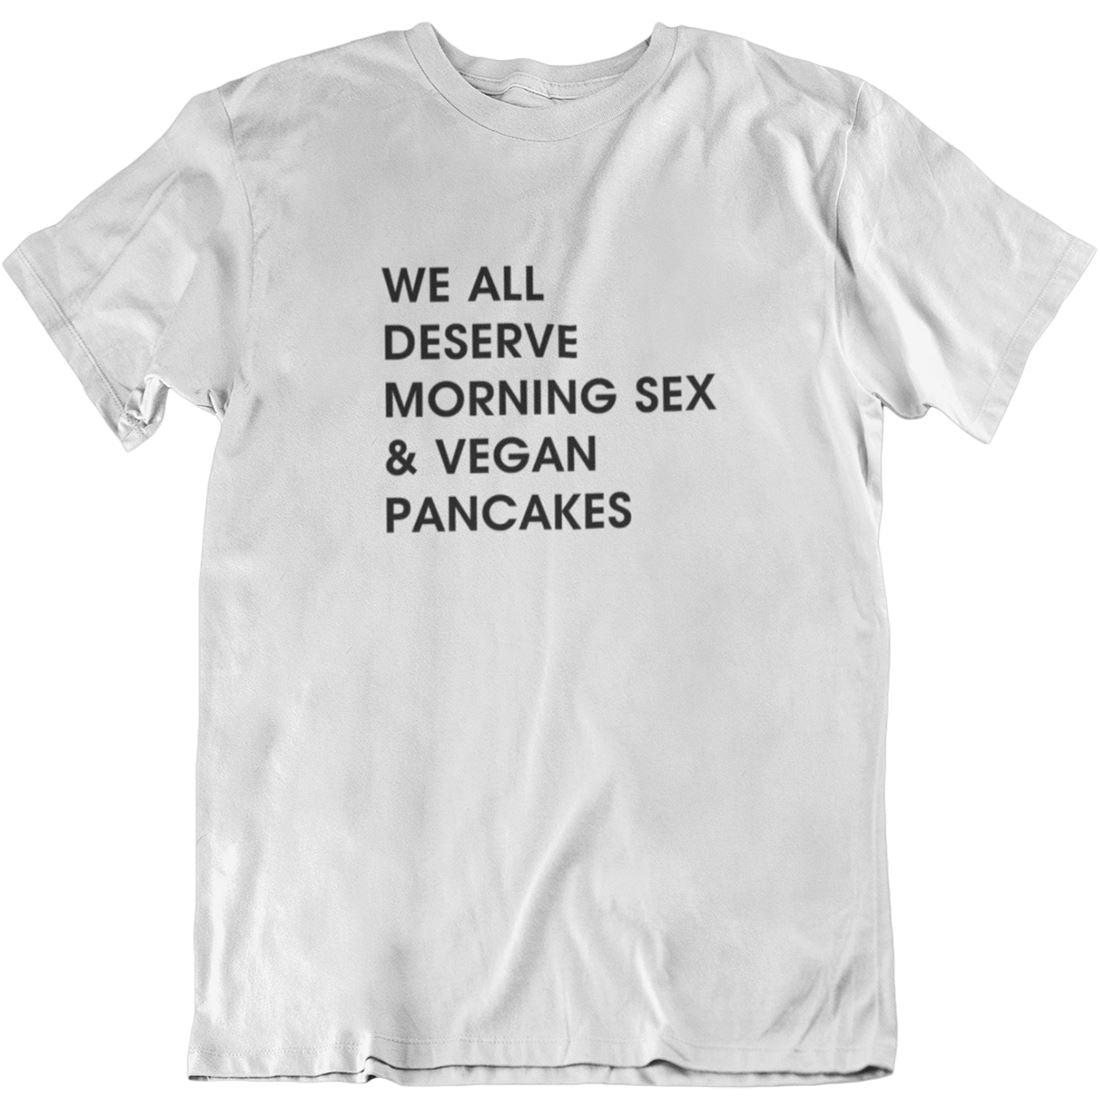 We all deserve morning sex & vegan pancakes - Unisex Organic Shirt Rocker T-Shirt ST/ST Shirtee Weiß S 